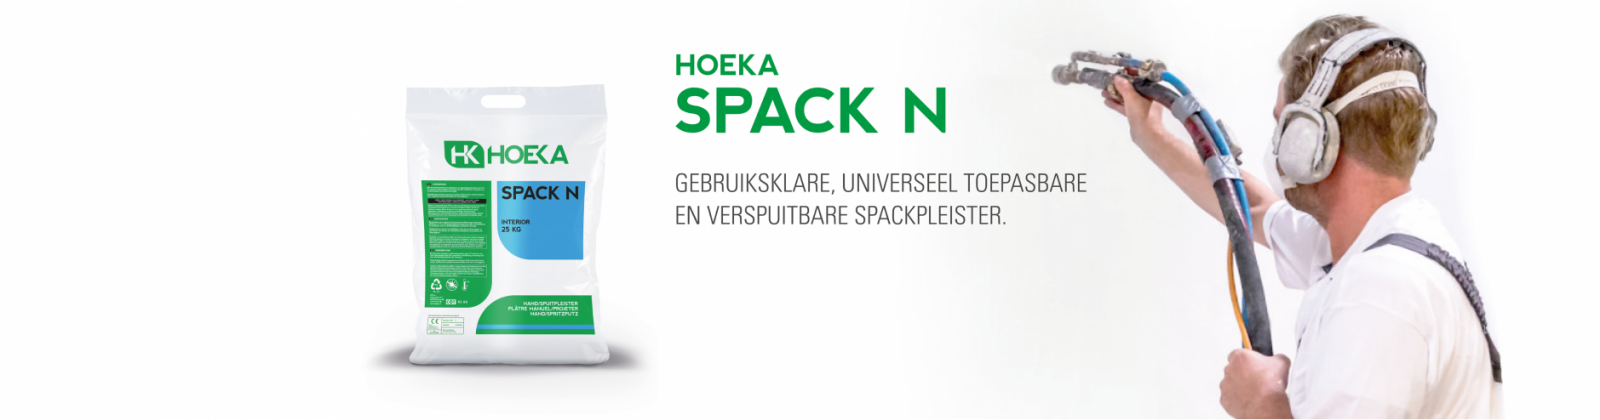 HOEKA Spack N (lees meer)